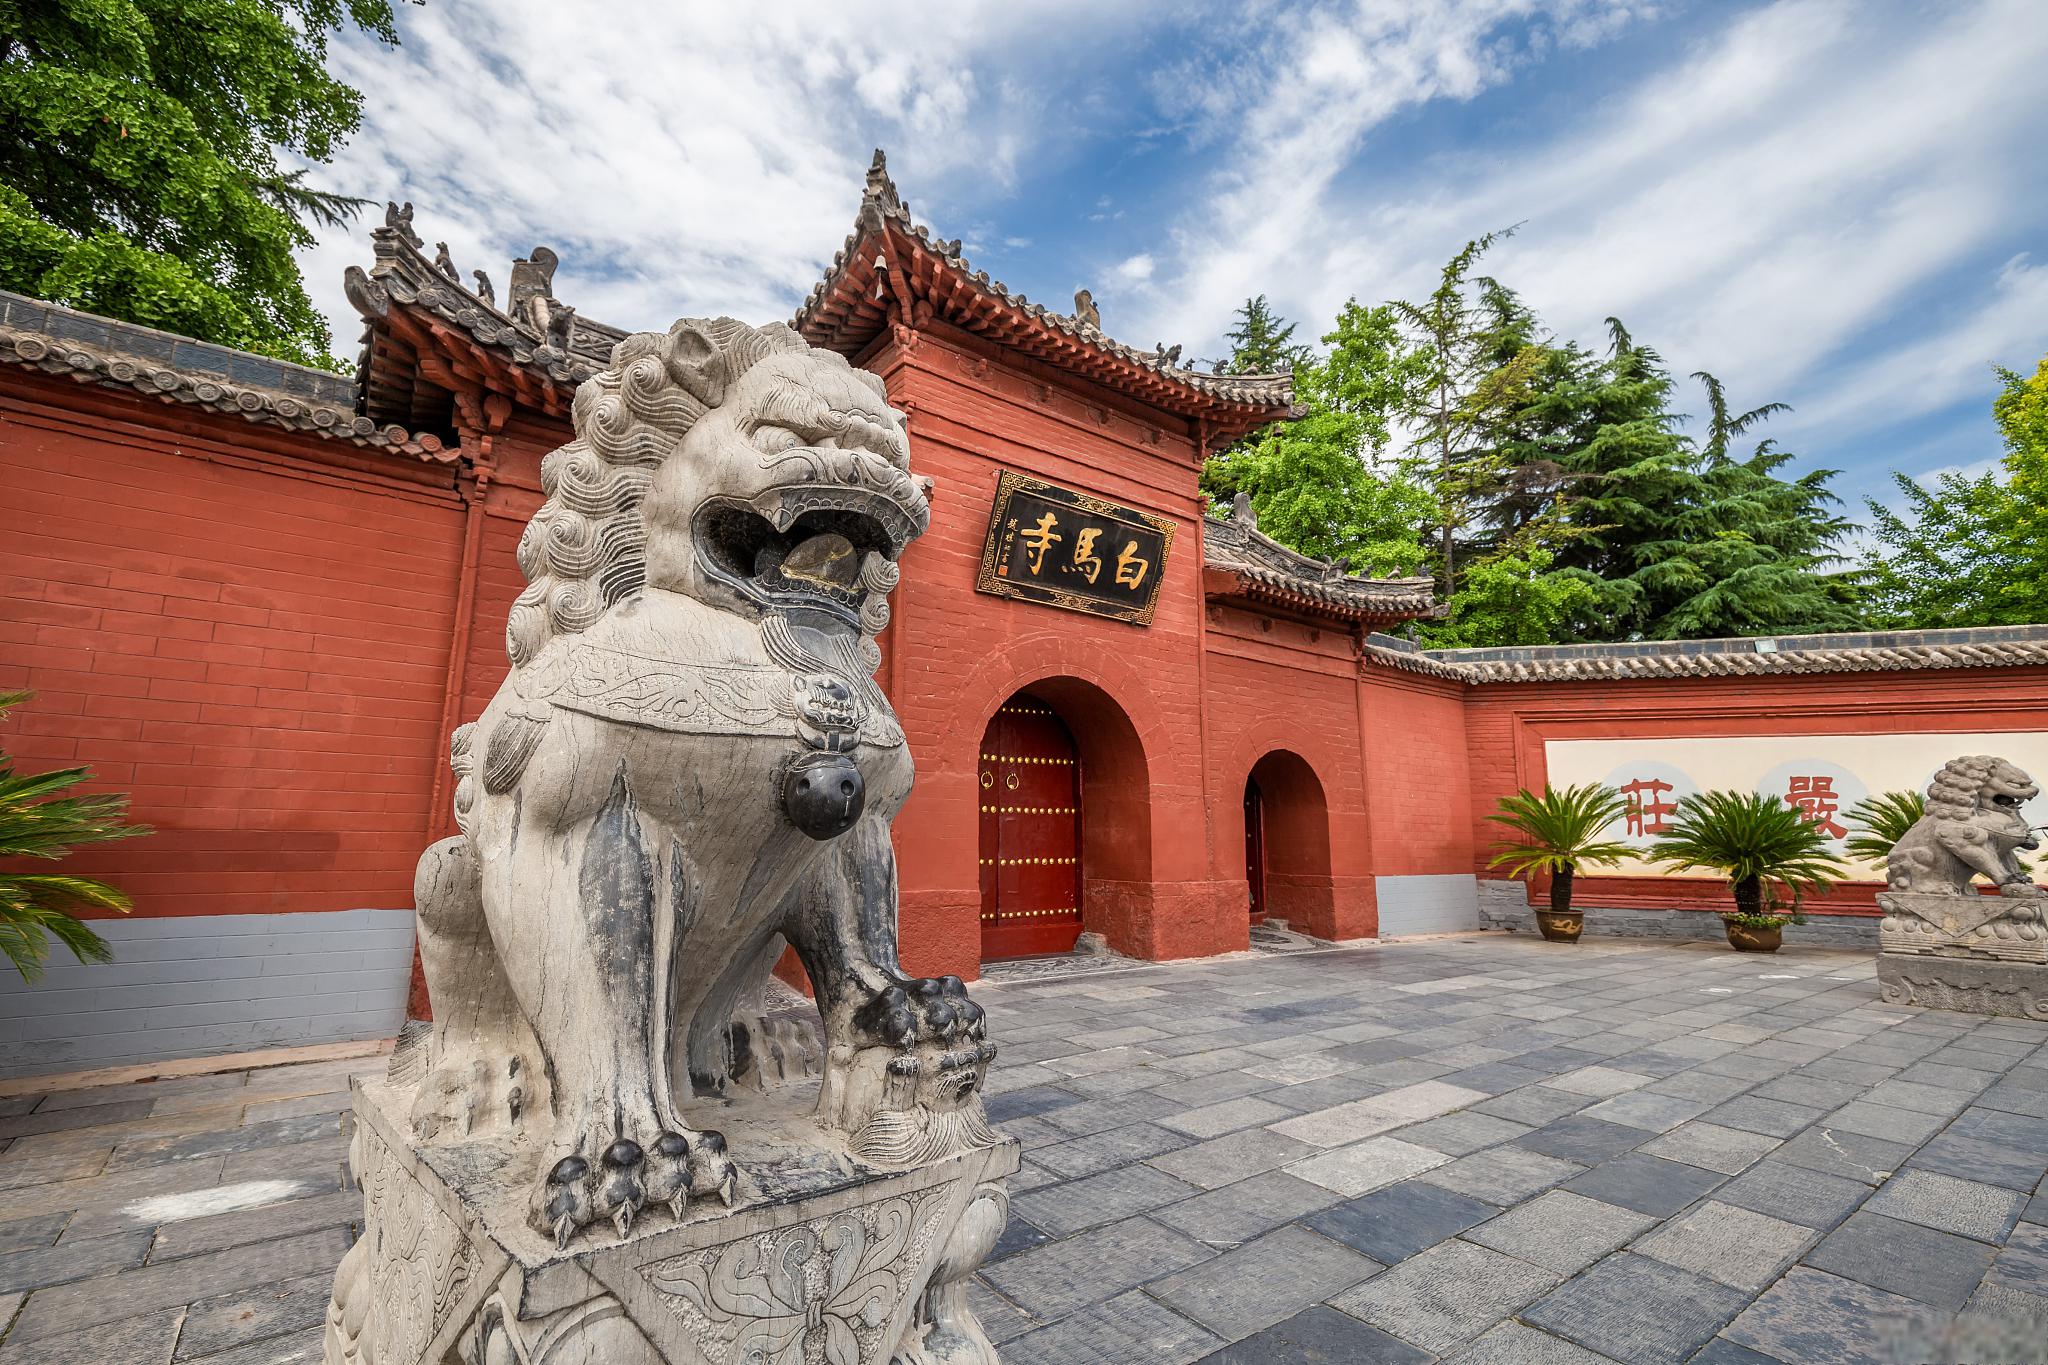 白马寺:中国佛教文化的繁盛之地 坐落于洛阳市东12公里处的这座千年